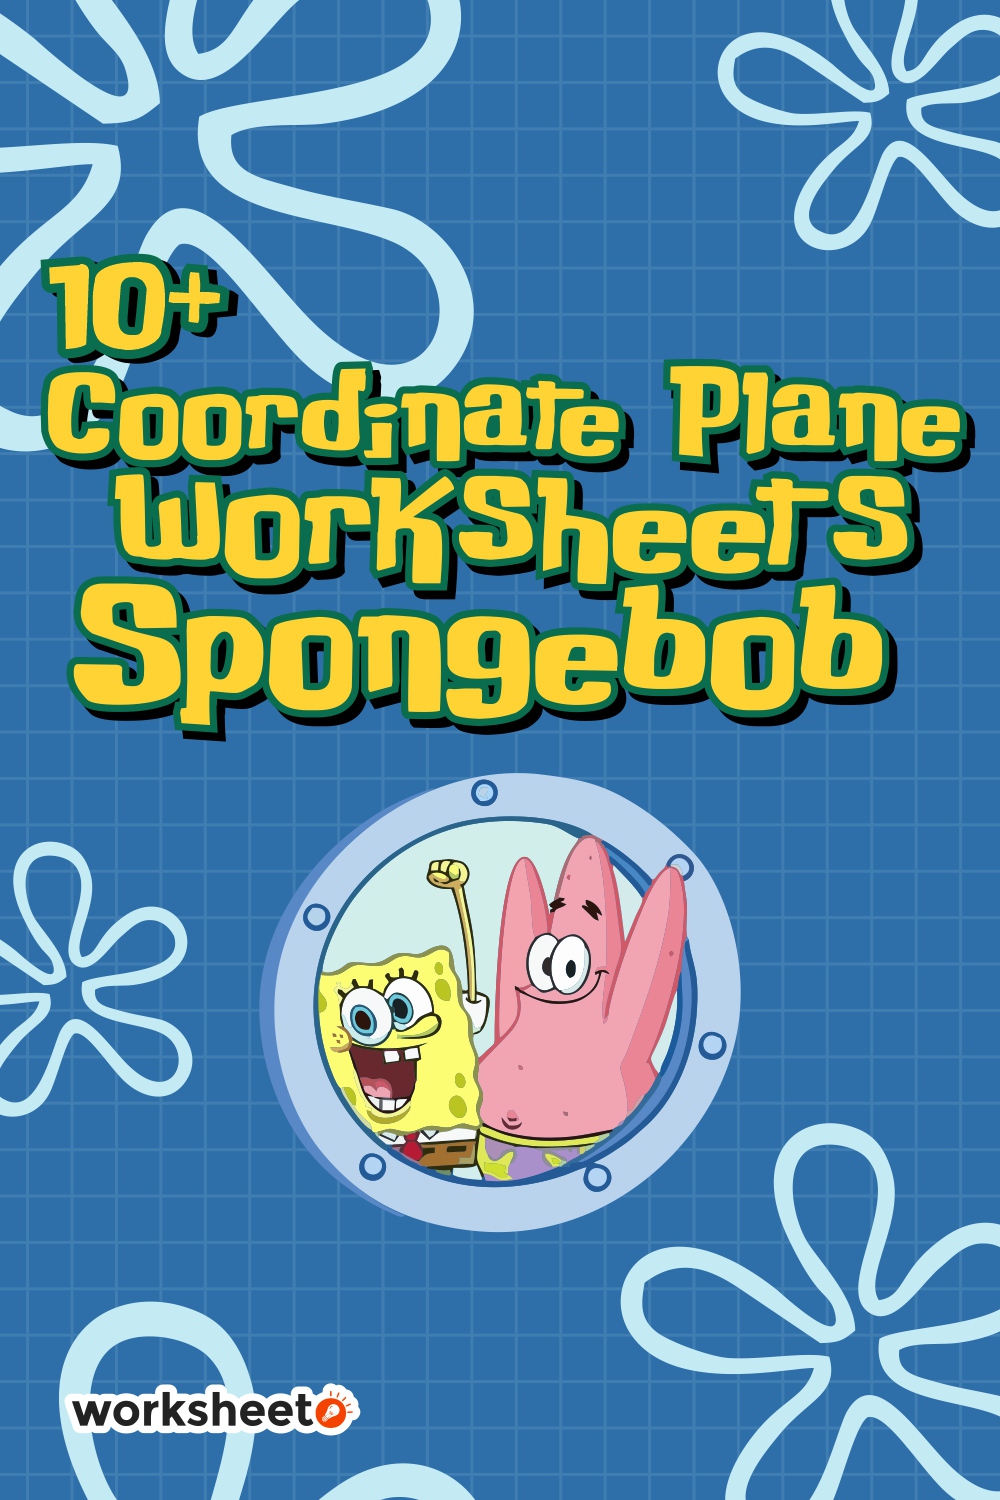 17 Images of Coordinate Plane Worksheets Spongebob